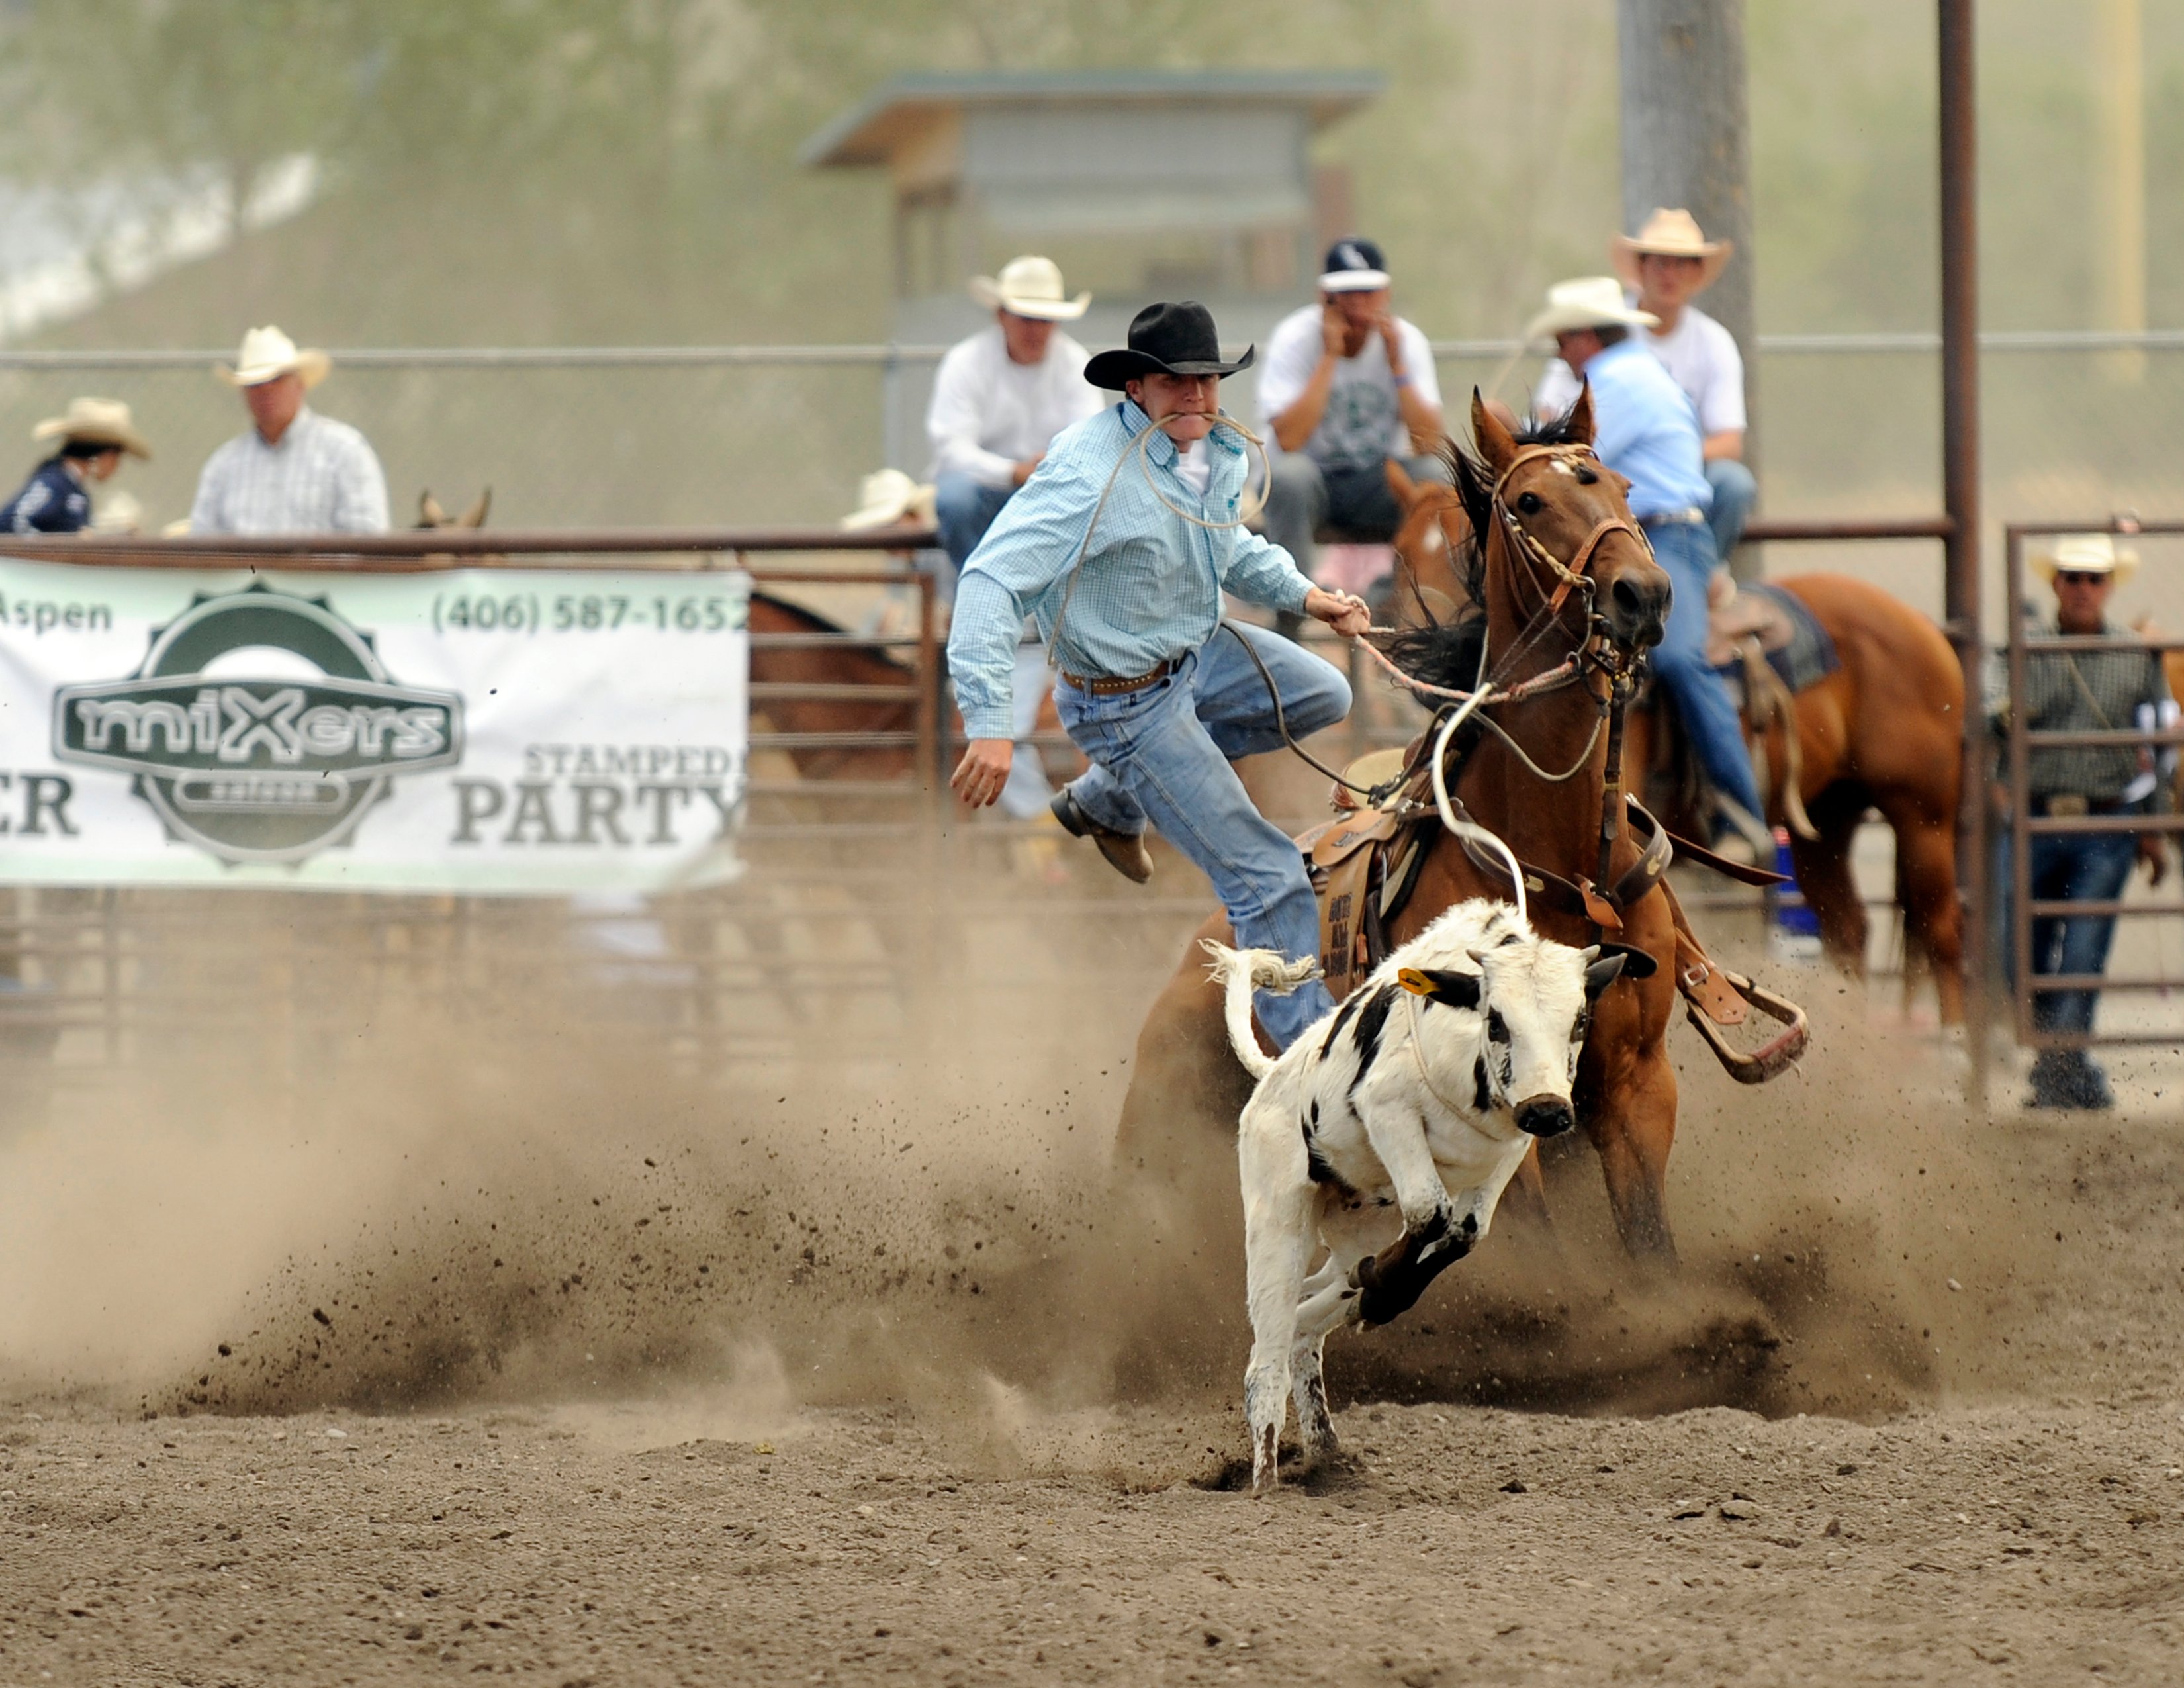 The Best Montana Rodeos Near Bozeman This Summer